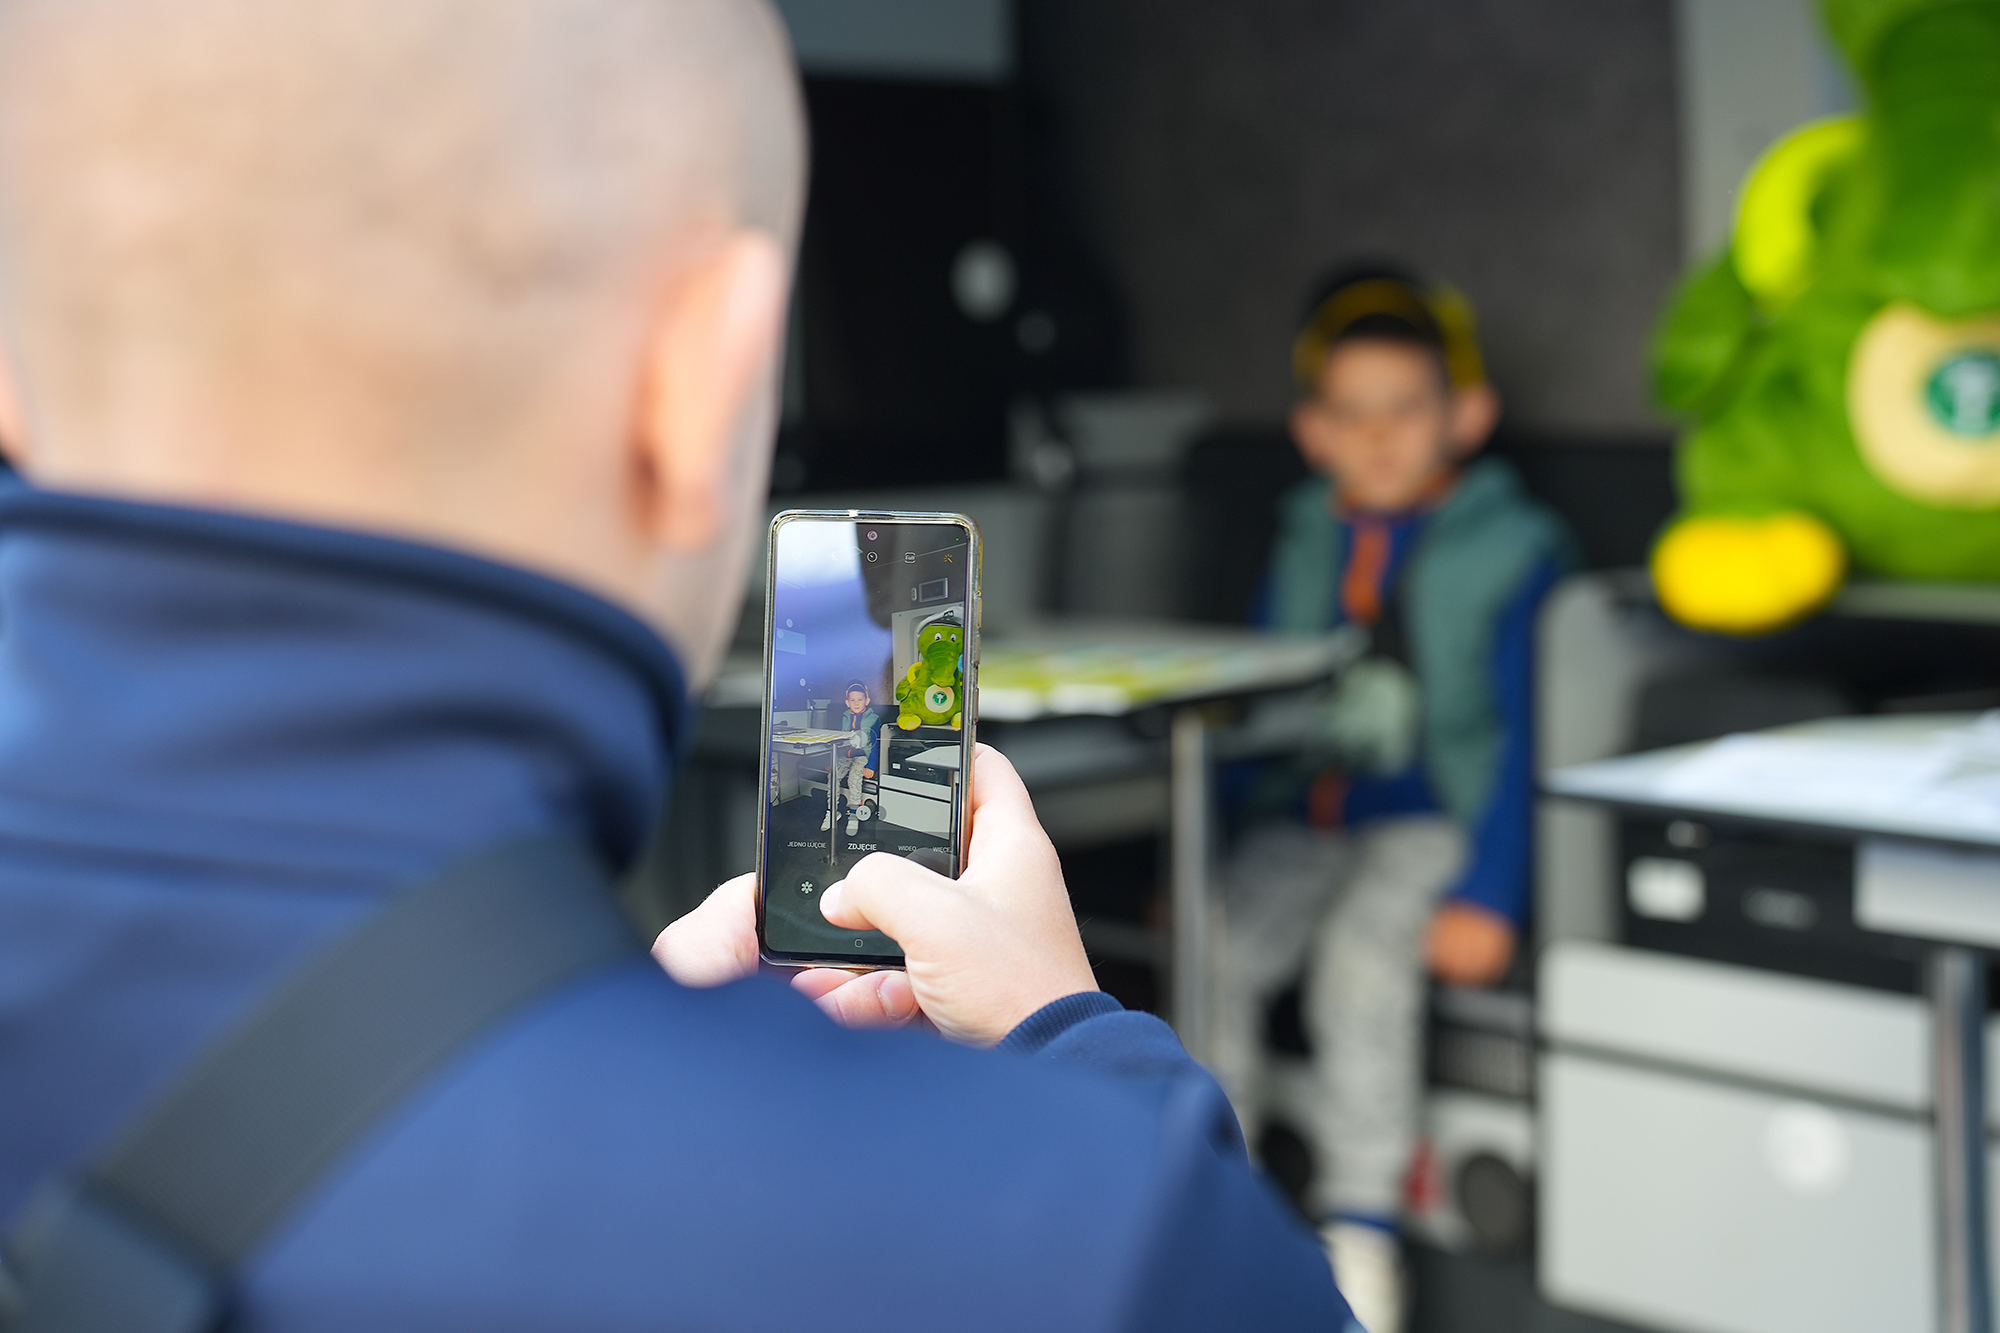 Chłopiec w inspekcyjnym furgonie - mężczyzna trzyma w ręku telefon, którym robi chłopcu zdjęcie. Obok chłopca jest Krokodylek Tirek.
